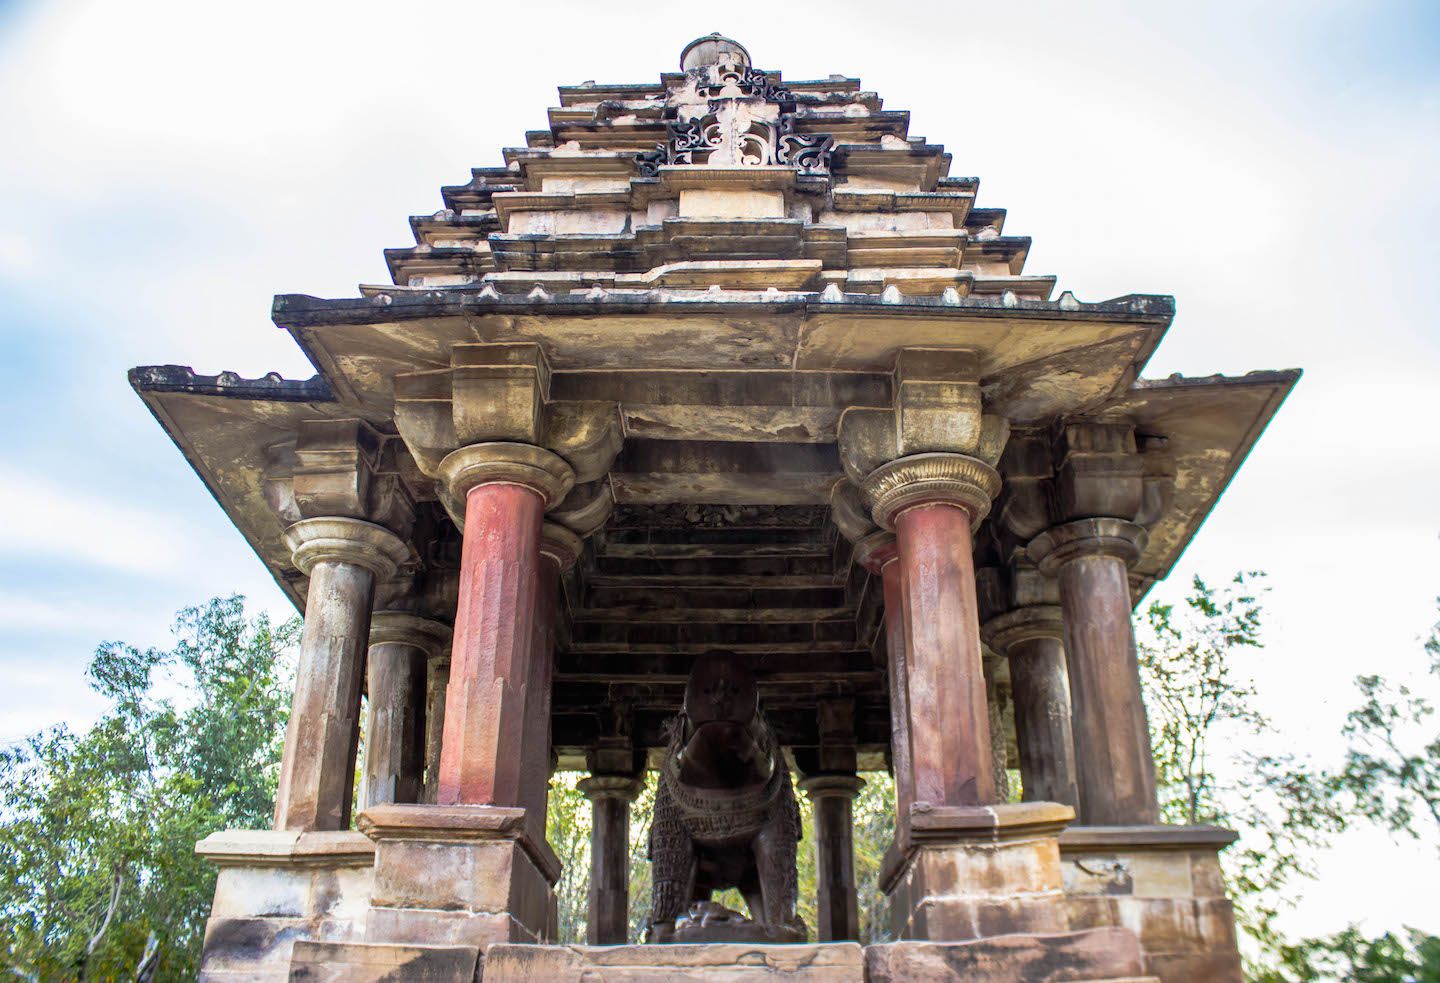 VIew of Varaha temple in Khajuraho, India